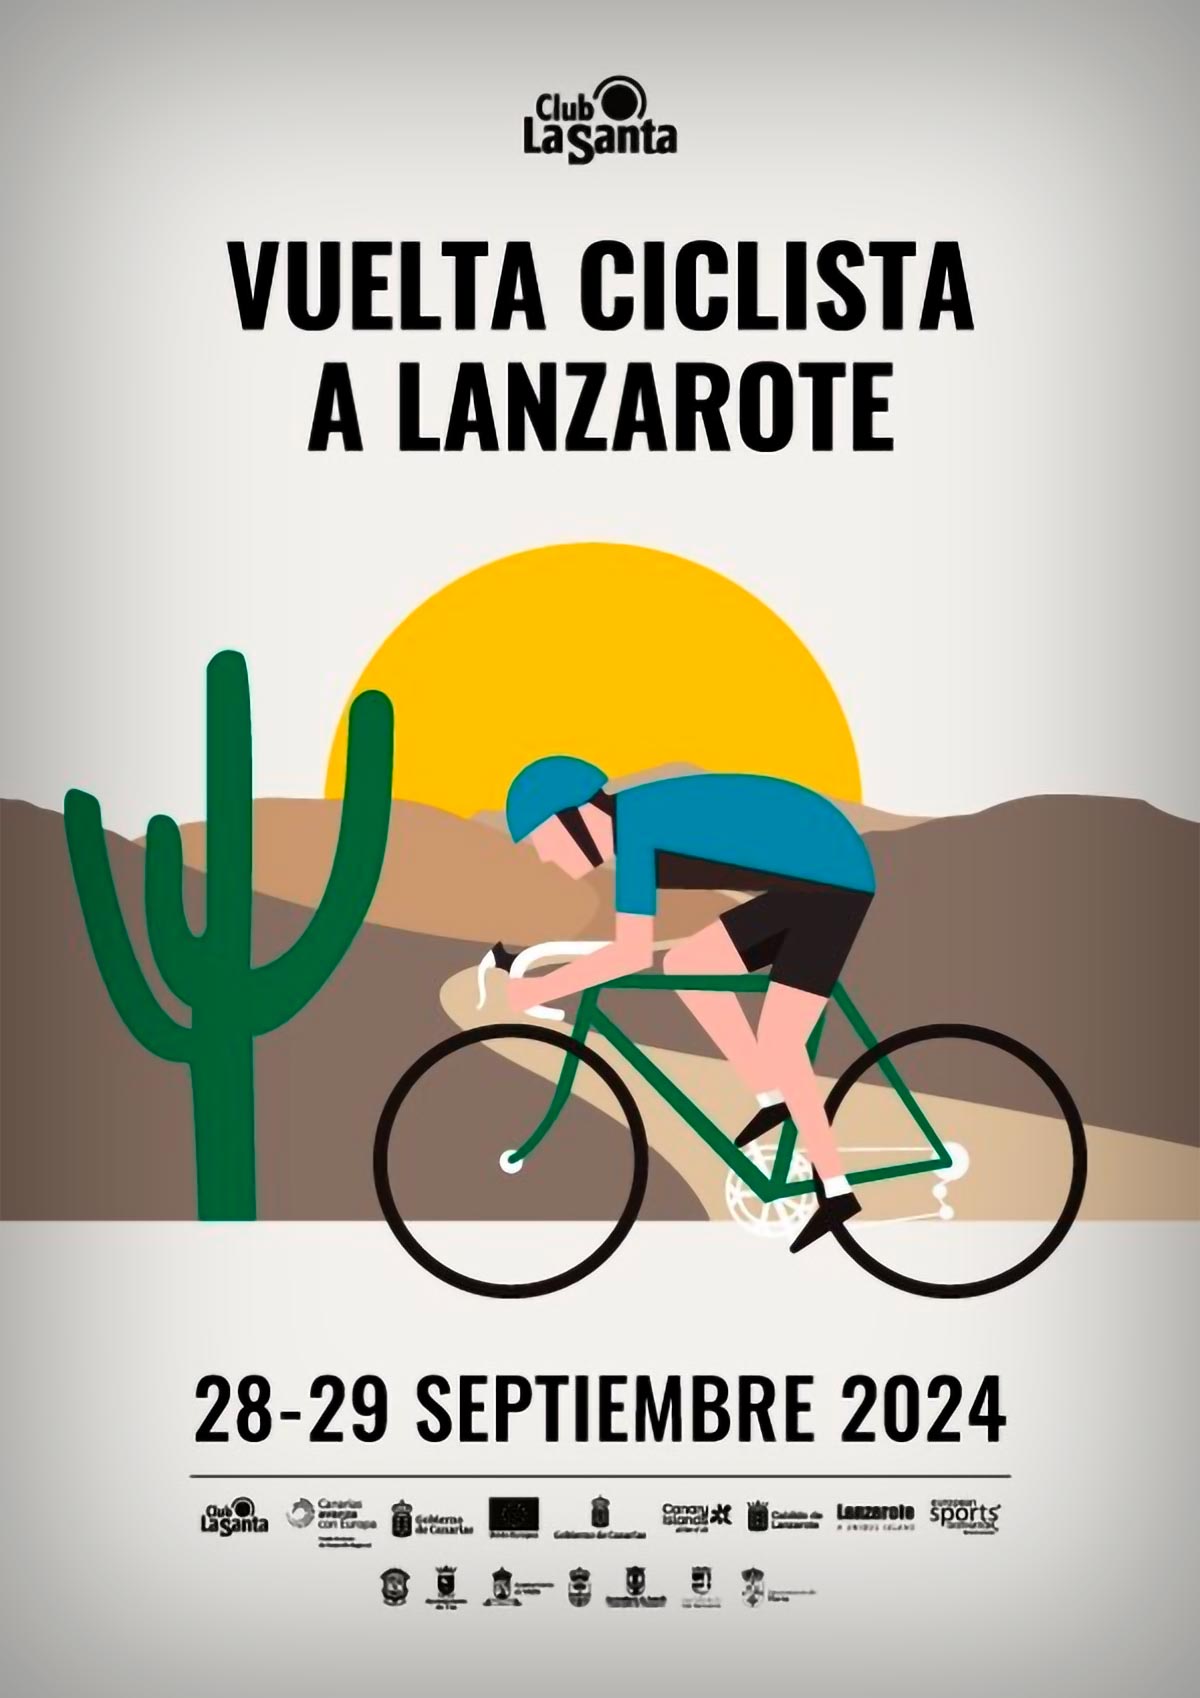 Club La Santa presenta una nueva prueba en su calendario deportivo: la Vuelta Ciclista a Lanzarote